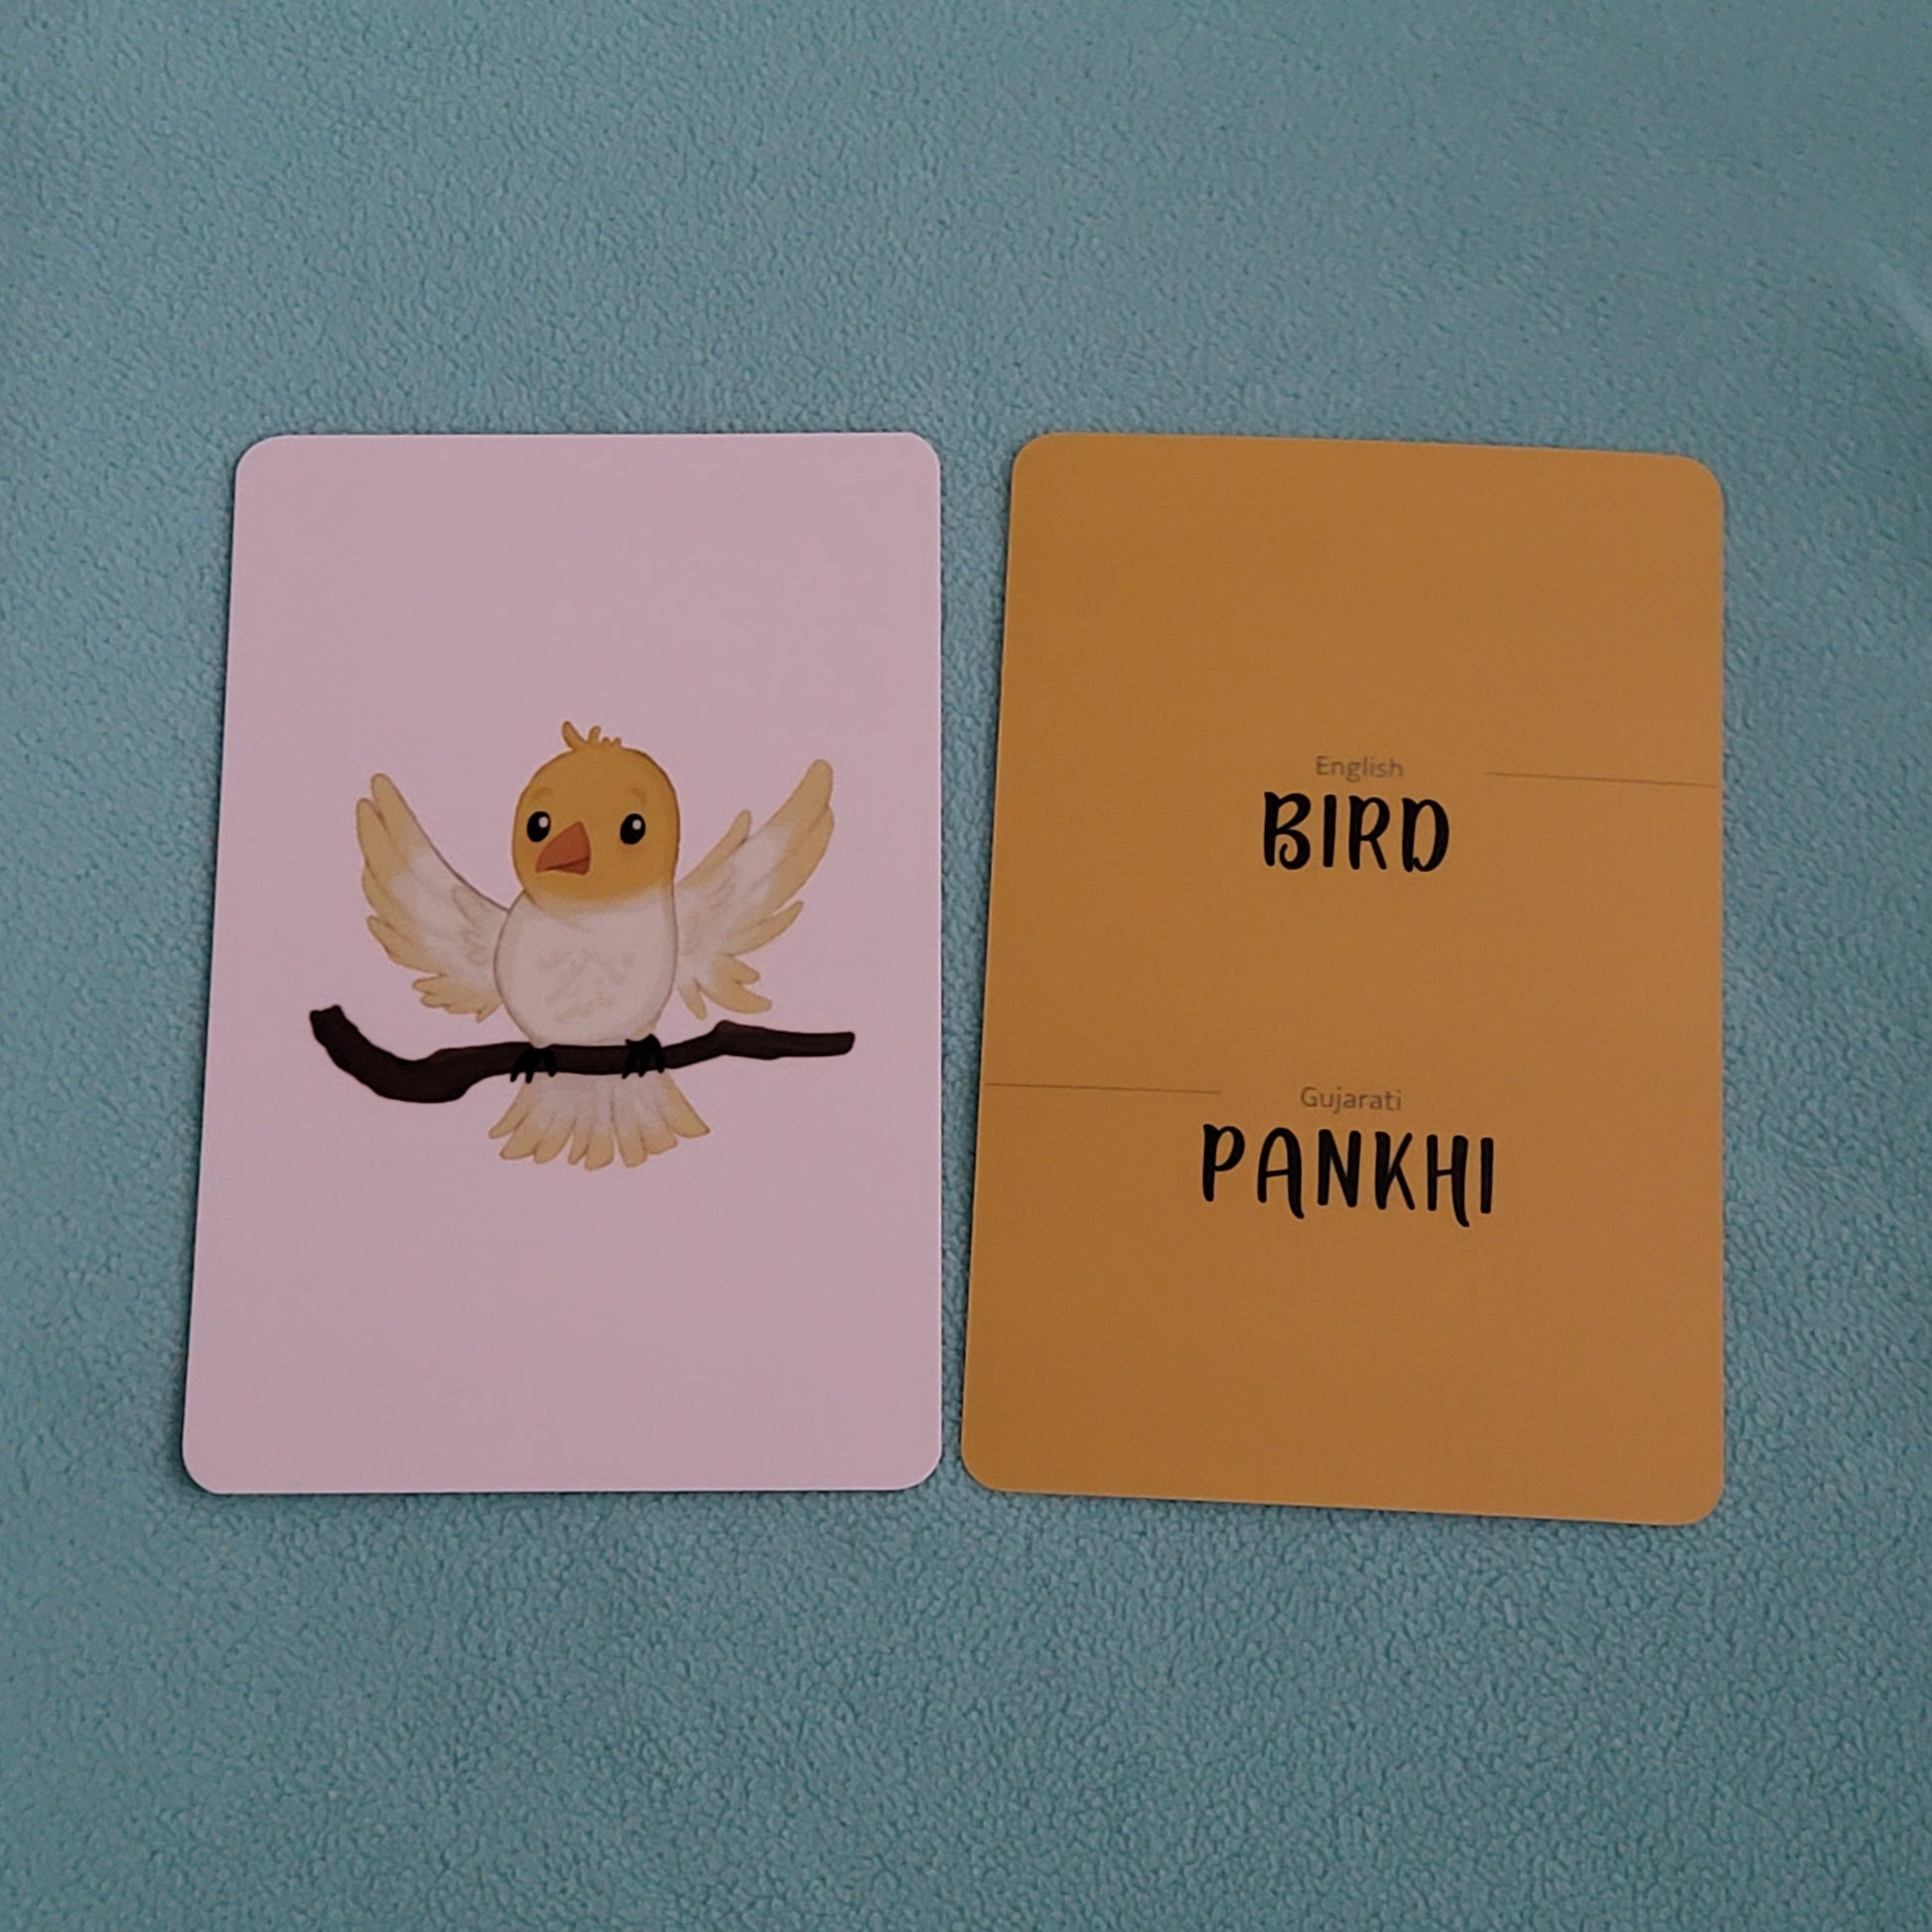 Bird in English, pankhi in gujarati flash card